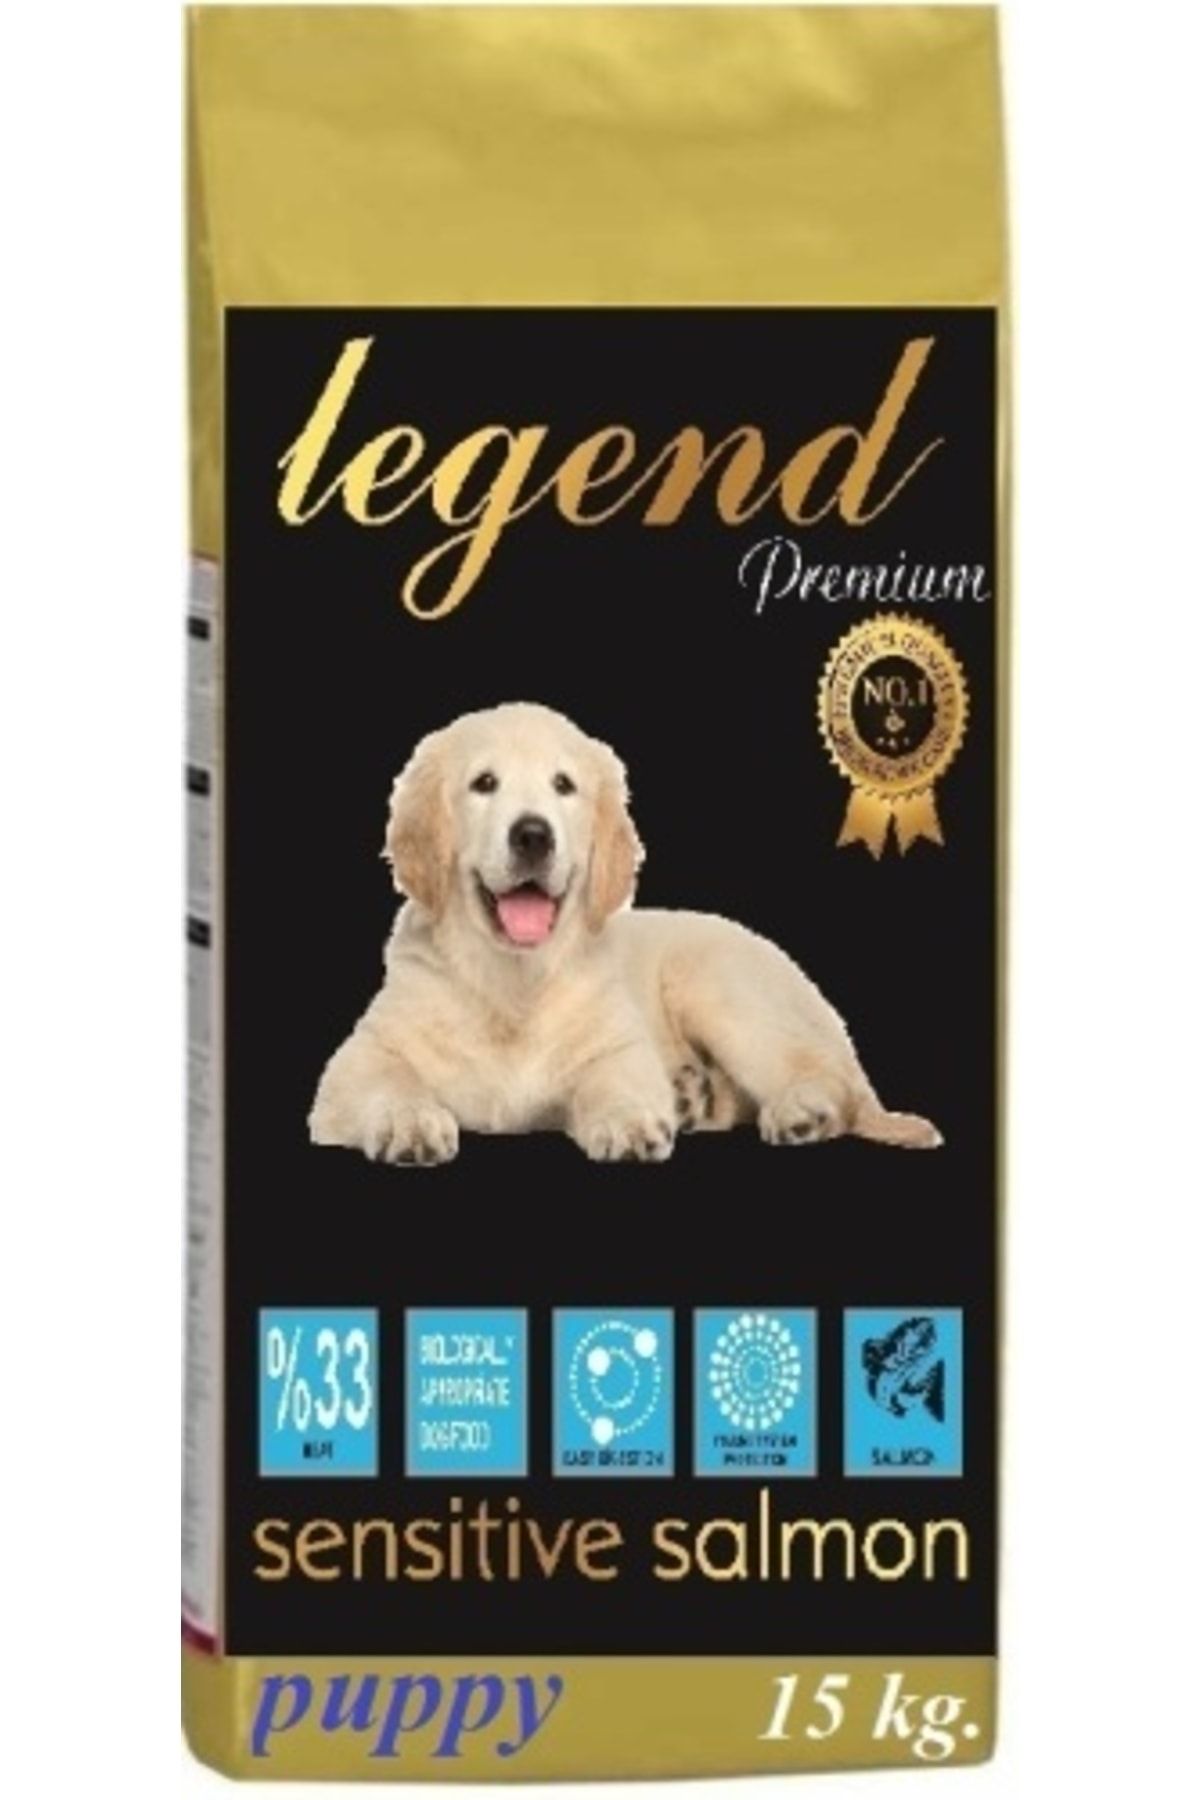 Legend Gold Hipoallerjenik Somonlu Büyük Irk Yavru Köpek Maması 15 Kg Somon Balıklı Yavru Köpek Maması